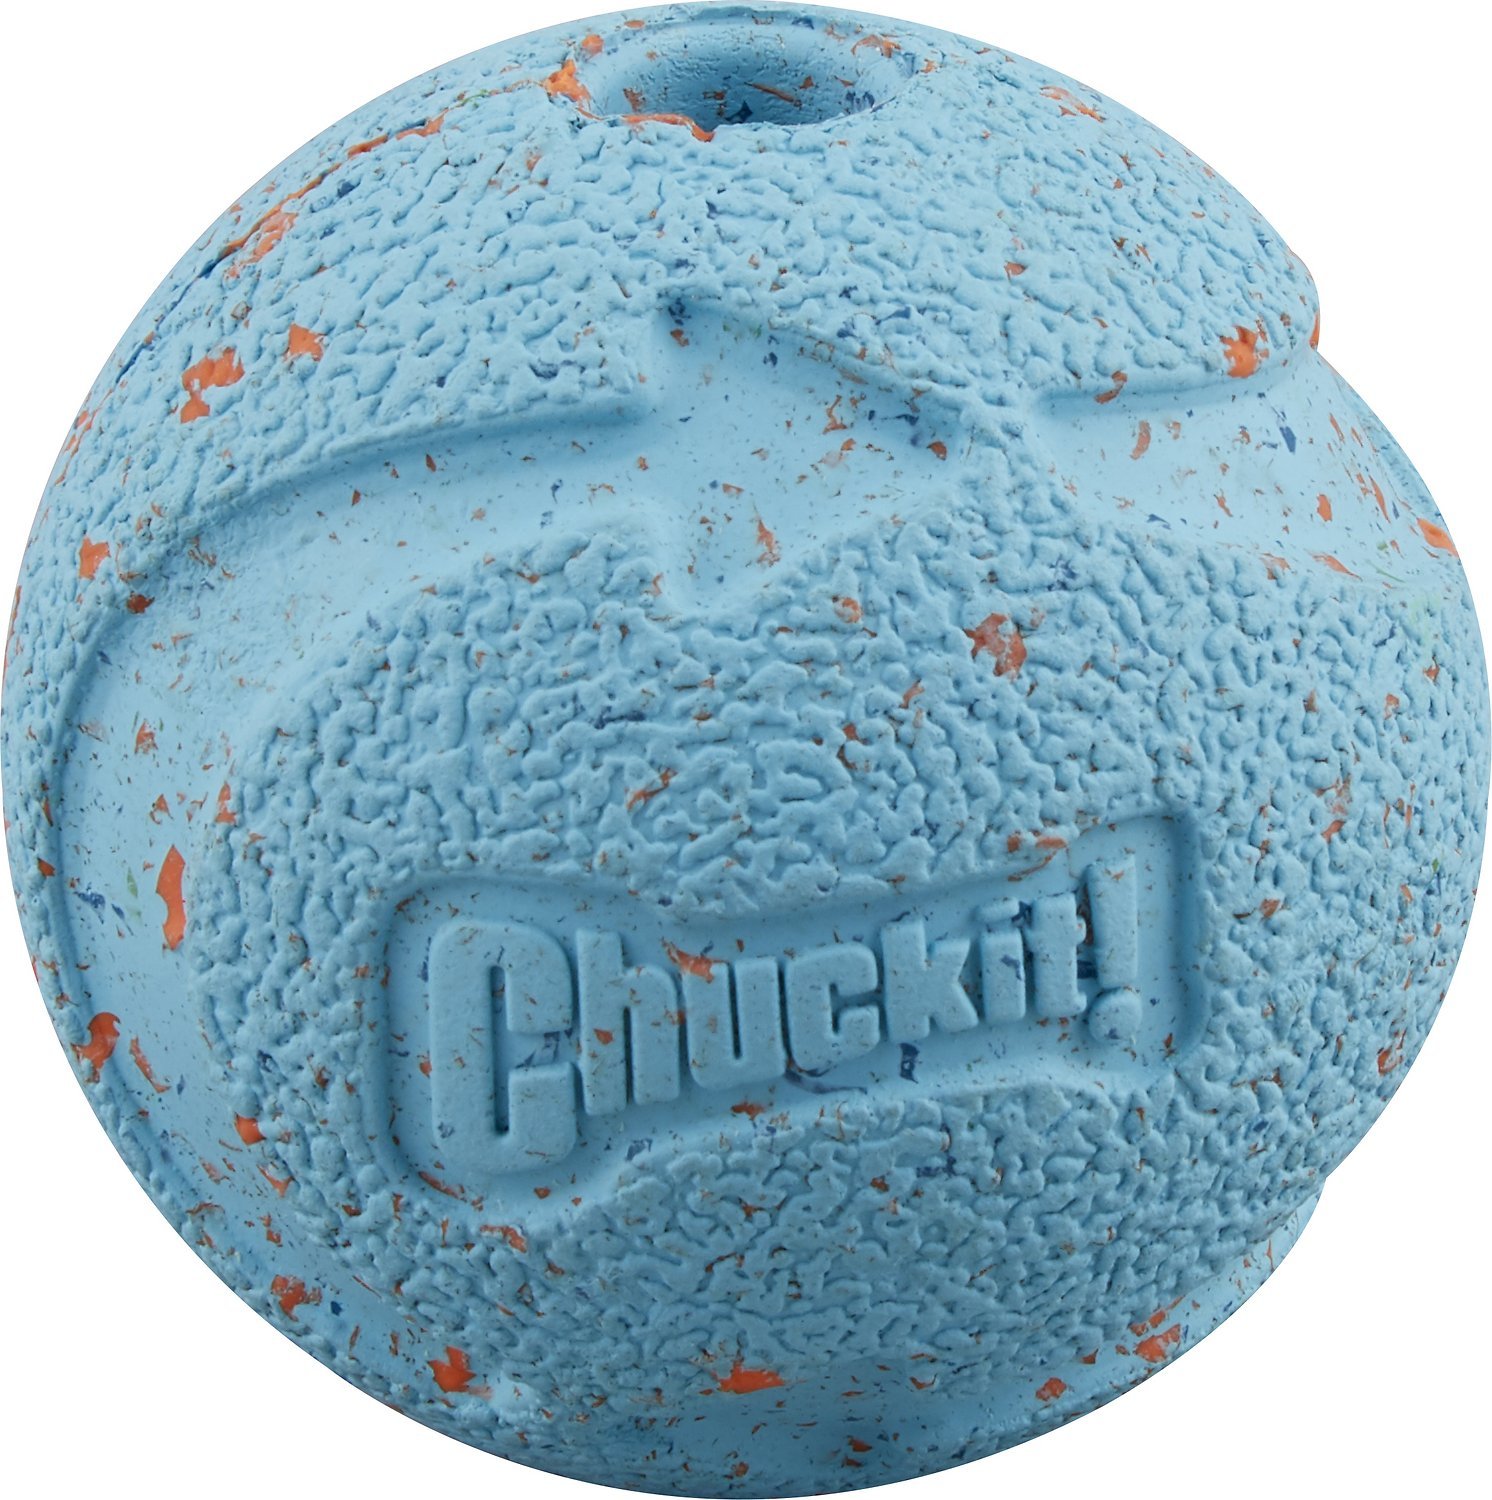 Chuckit! Fetch Medley - Seturi de 3 mingi diferite pentru câini - zoom